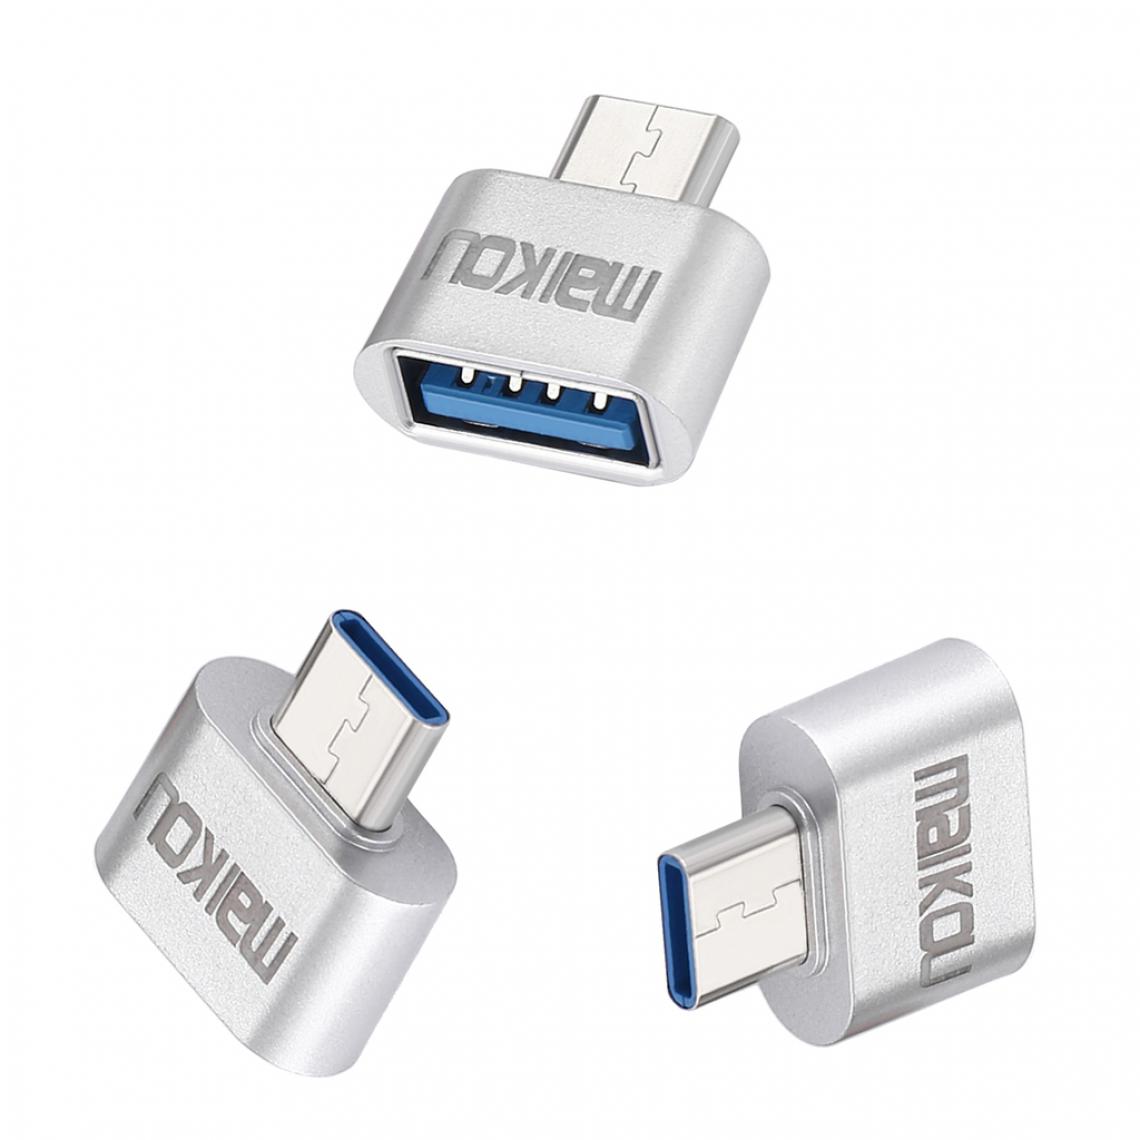 marque generique - 3x Adaptateurs USB Type-C à USB 3.0 Pour MacBook Et Autres Périphériques De Type C - Argent - Hub